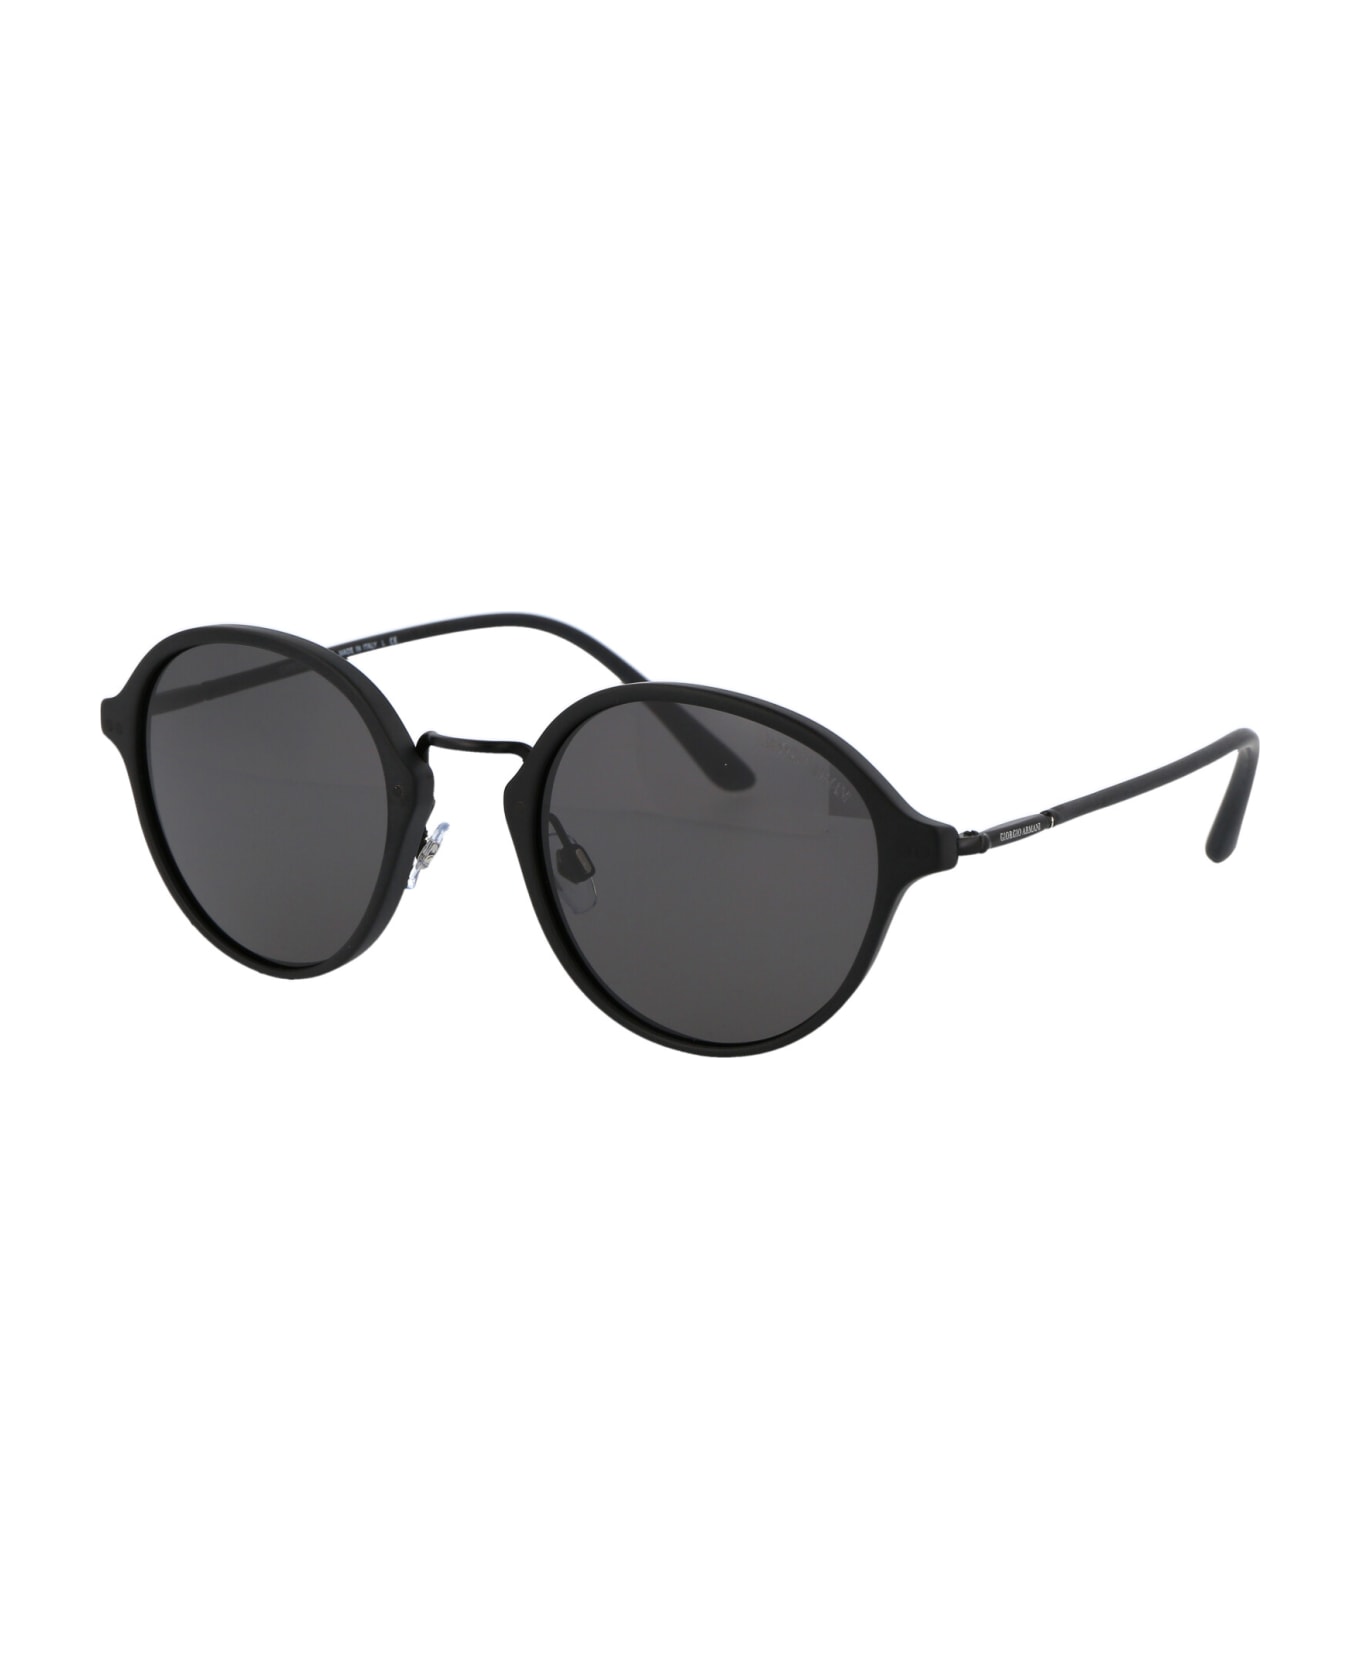 Giorgio Armani 0ar8139 Sunglasses - 5042B1 MATTE BLACK